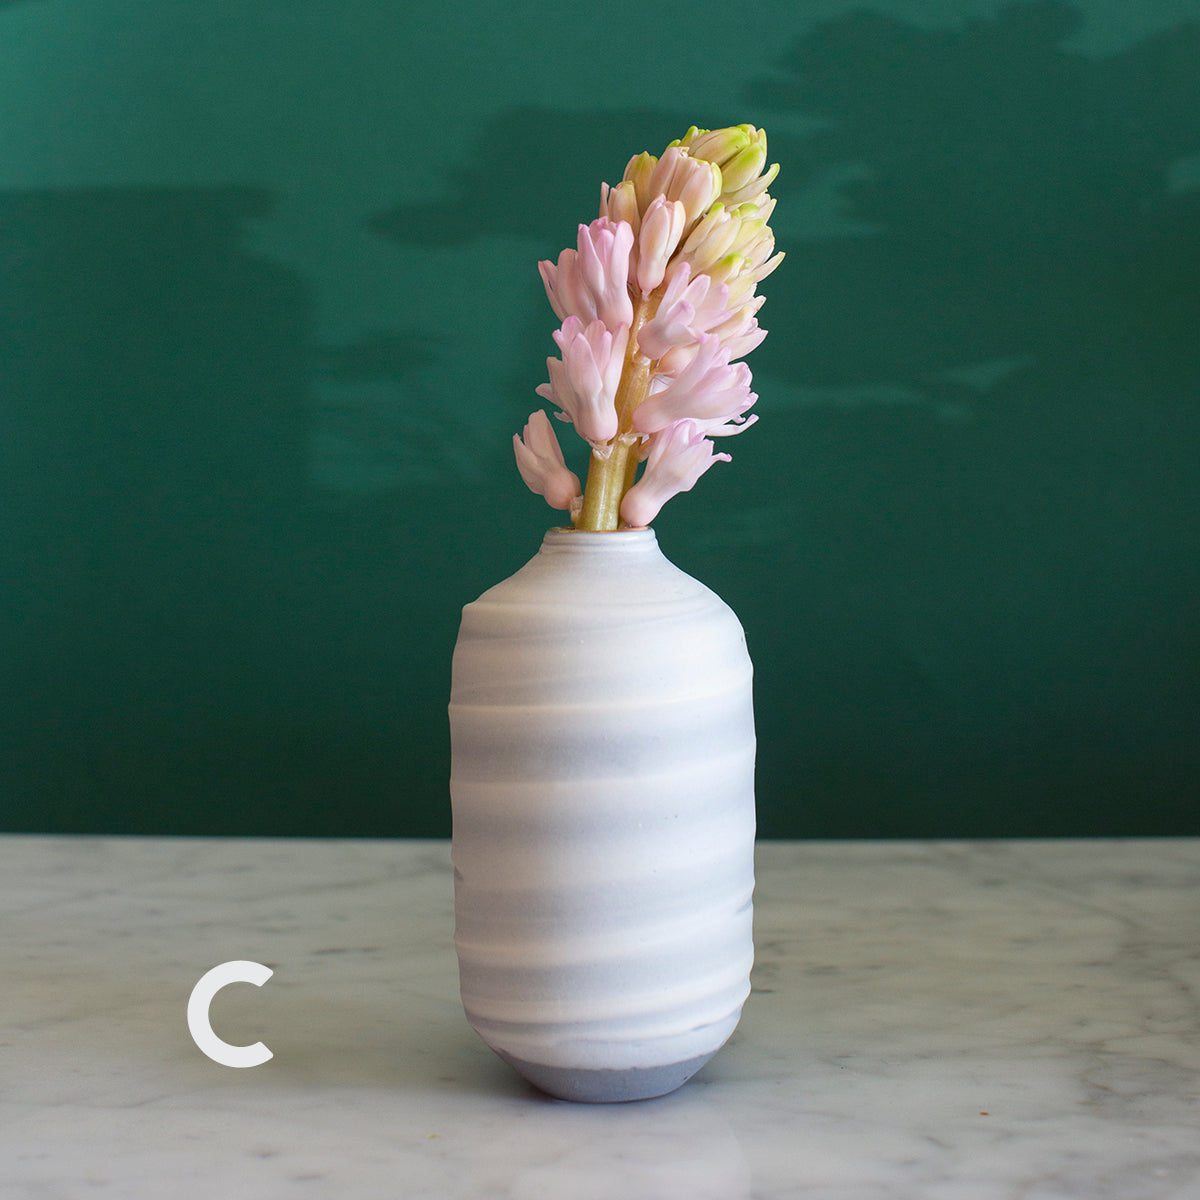 Swirled Ceramic Vases